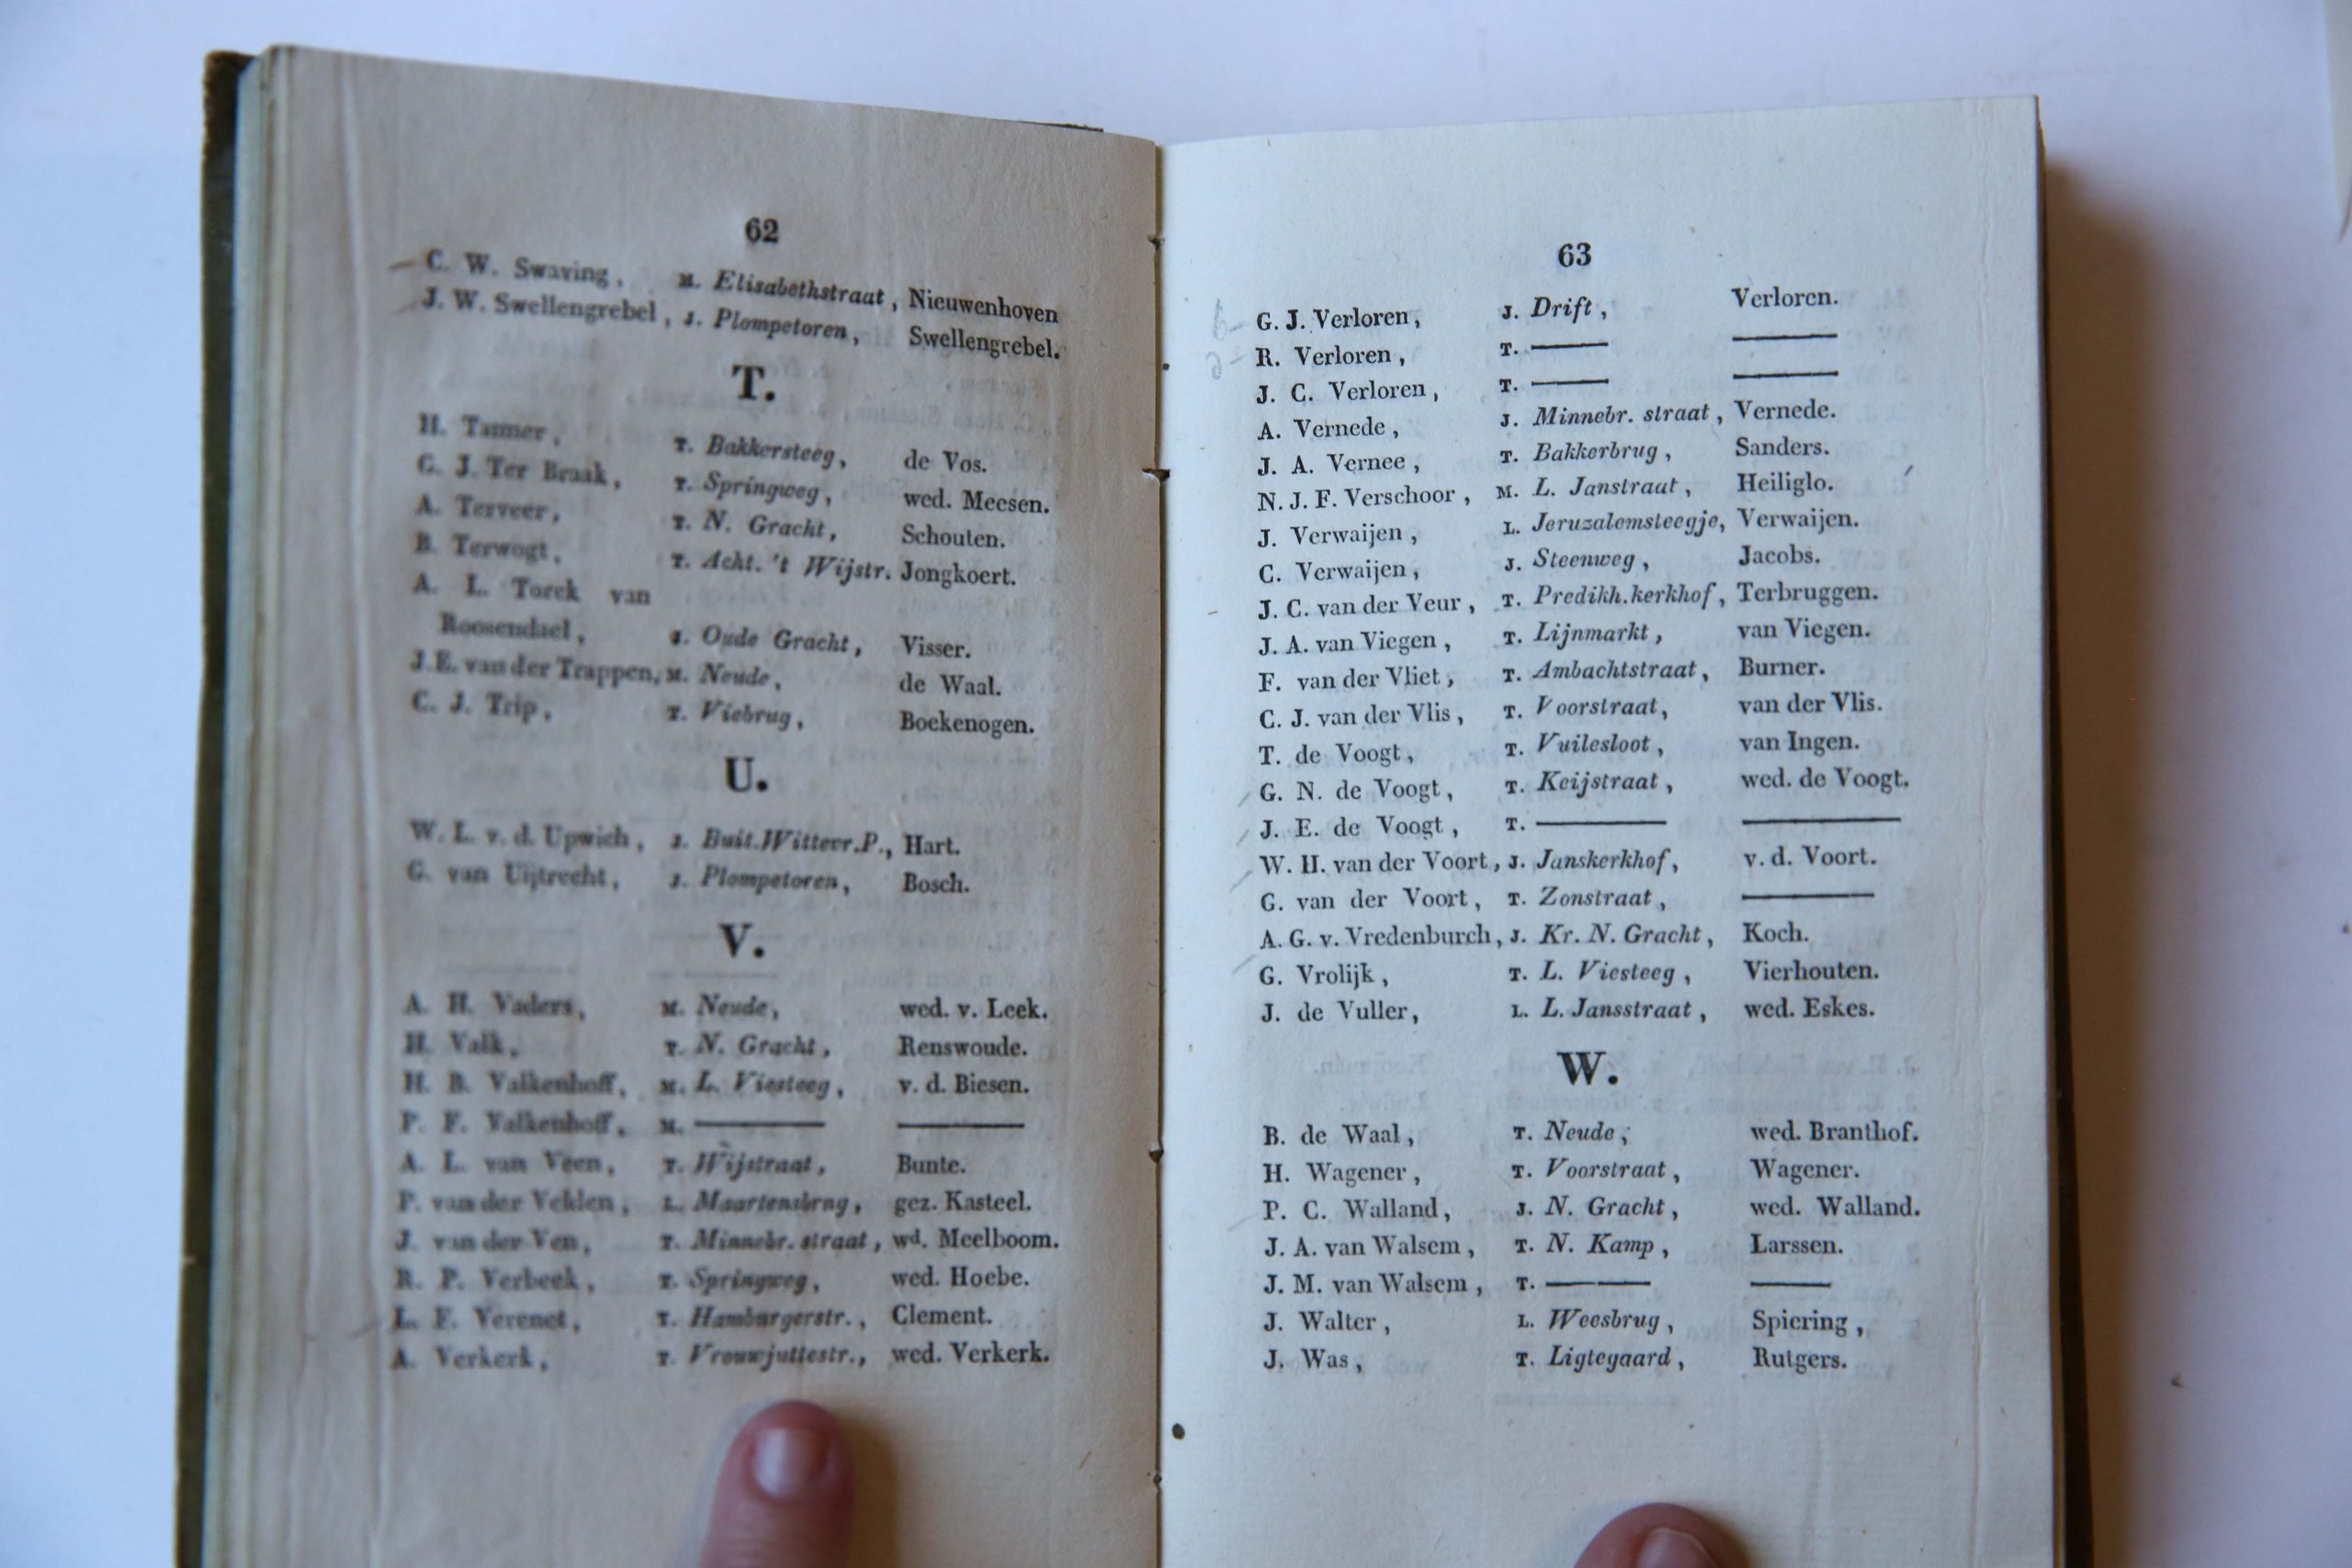 Utrechtsche Studenten Almanak voor het jaar 1831, Utrecht J. van Schoonhoven en N. van der Monde, 243 pp.